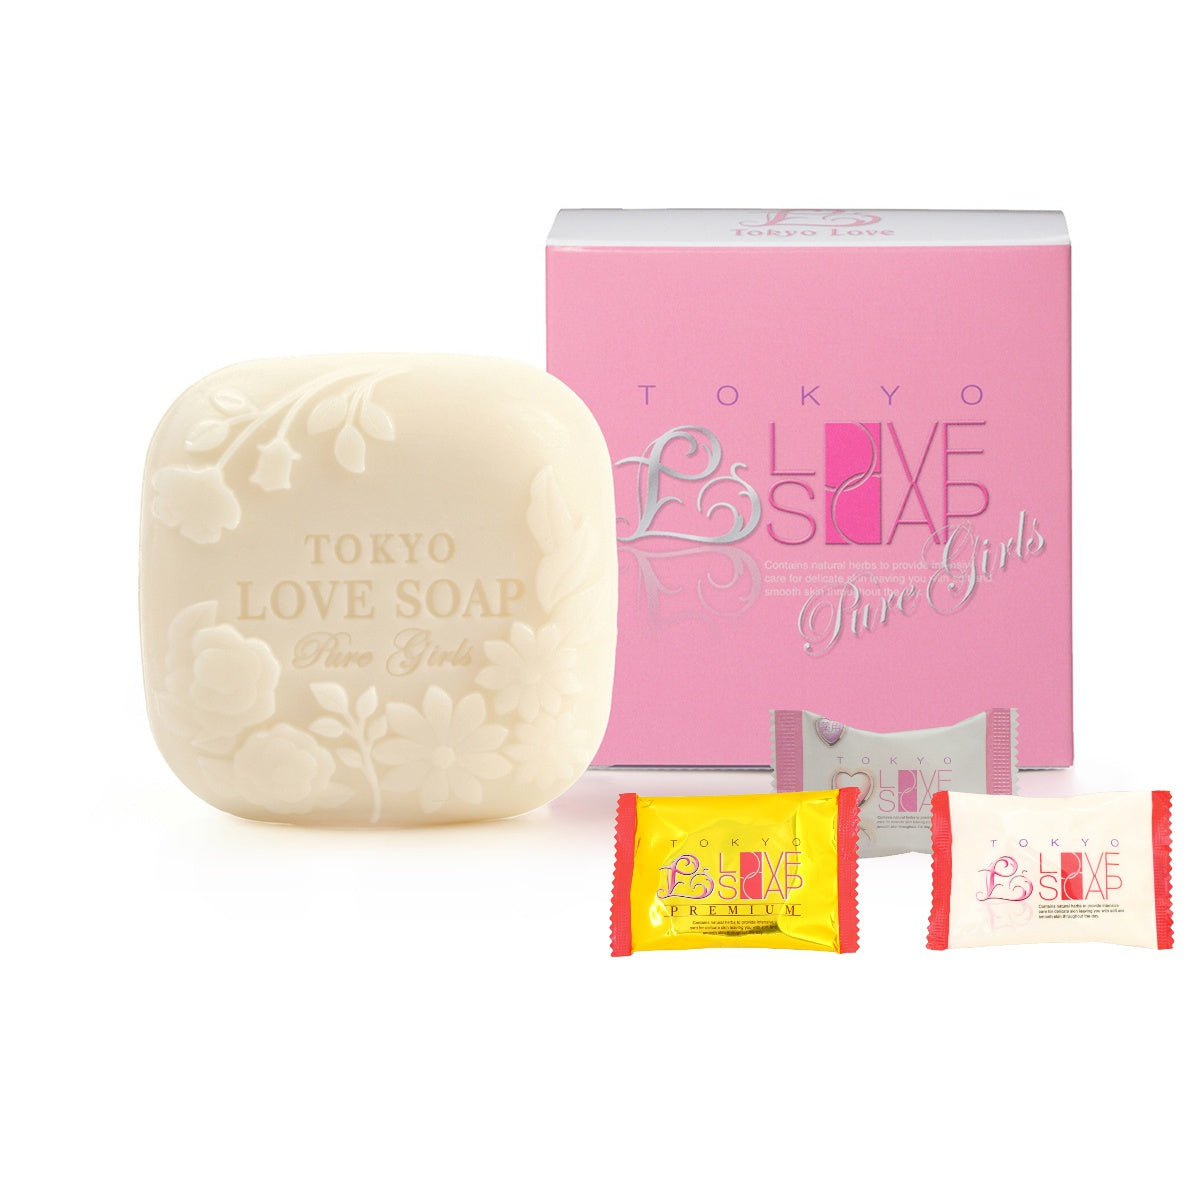 Tokyo Love Soap Pure Girls 80g + Mini Soap 3set